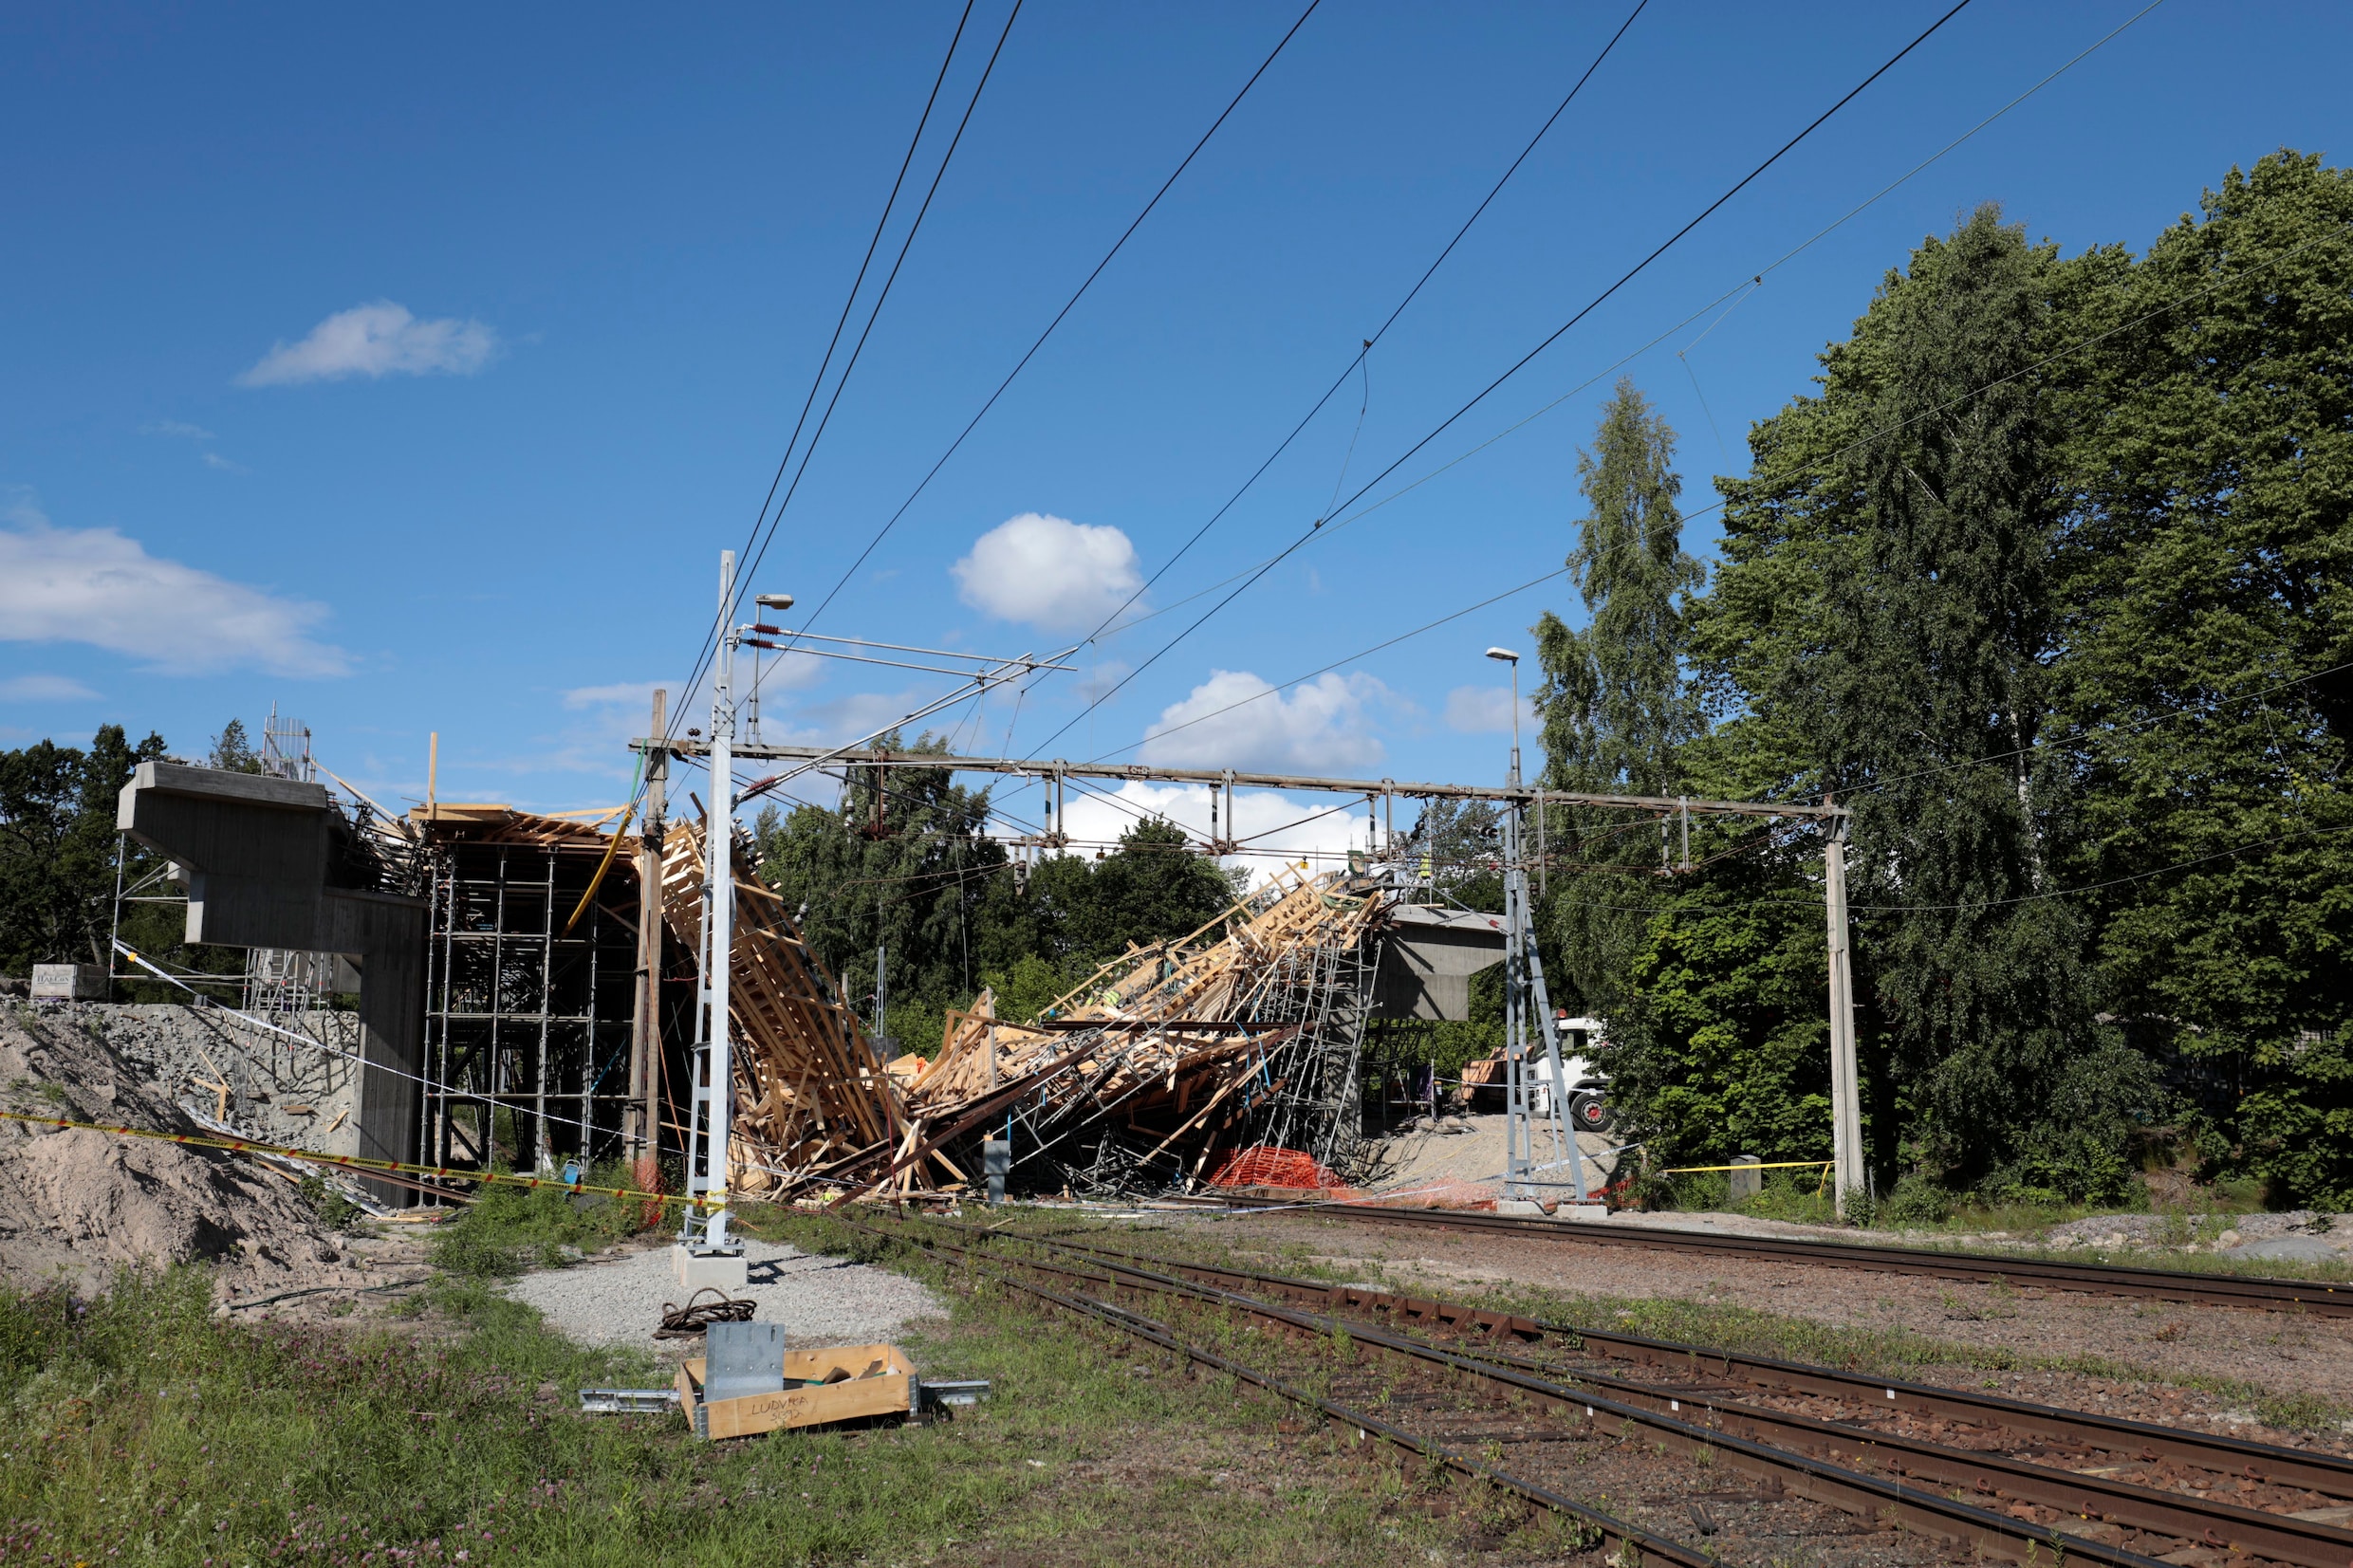 Zweedse brug in aanbouw stort in: meerdere gewonden